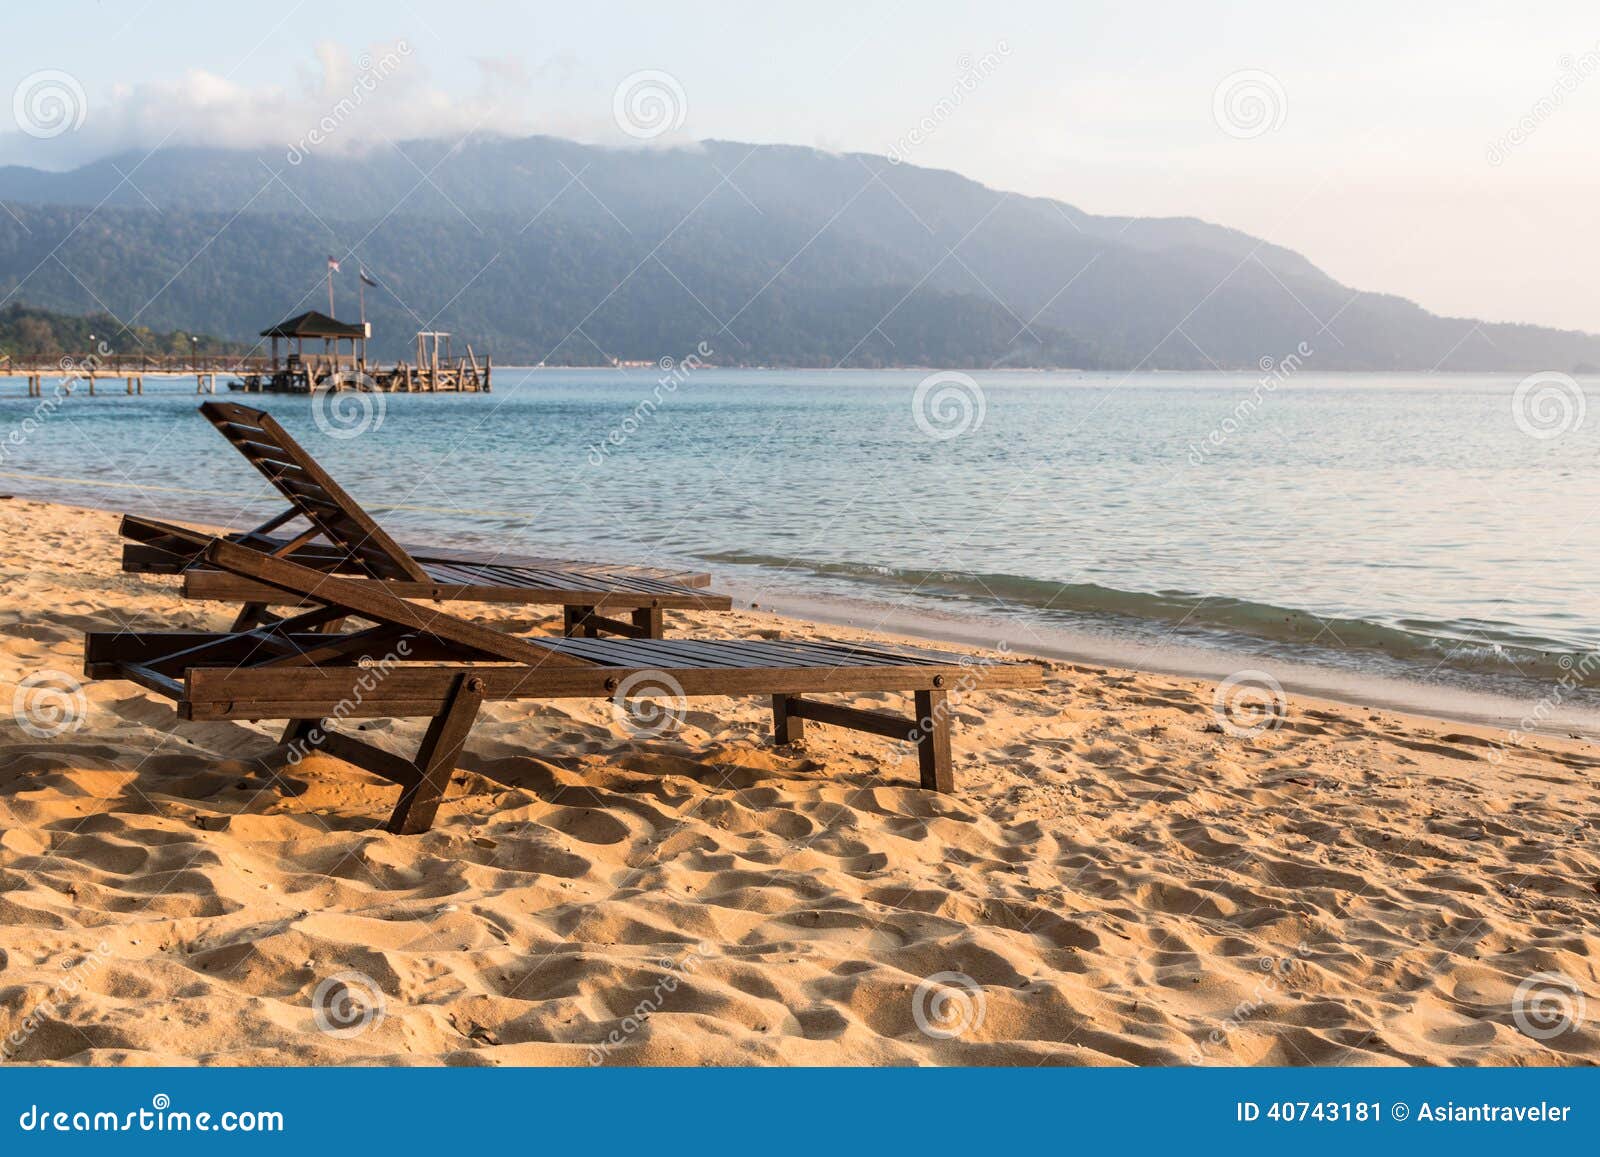 long chairs on a beach in pulau tioman, malaysia